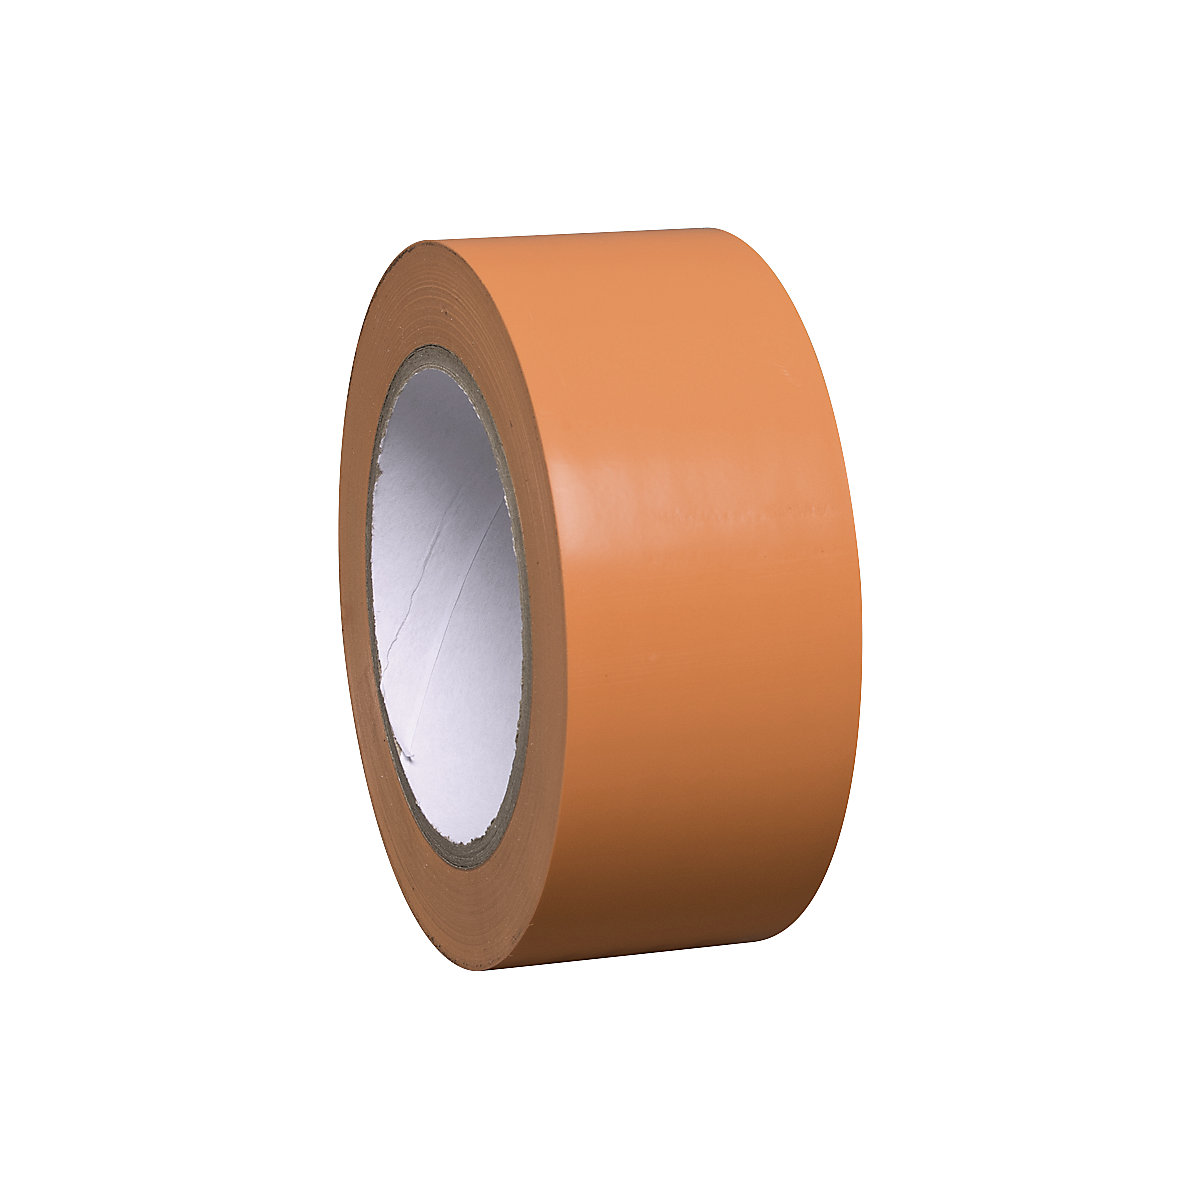 Talni označevalni trak iz vinila, enobarven, širina 50 mm, oranžen, DE 8 rol-4